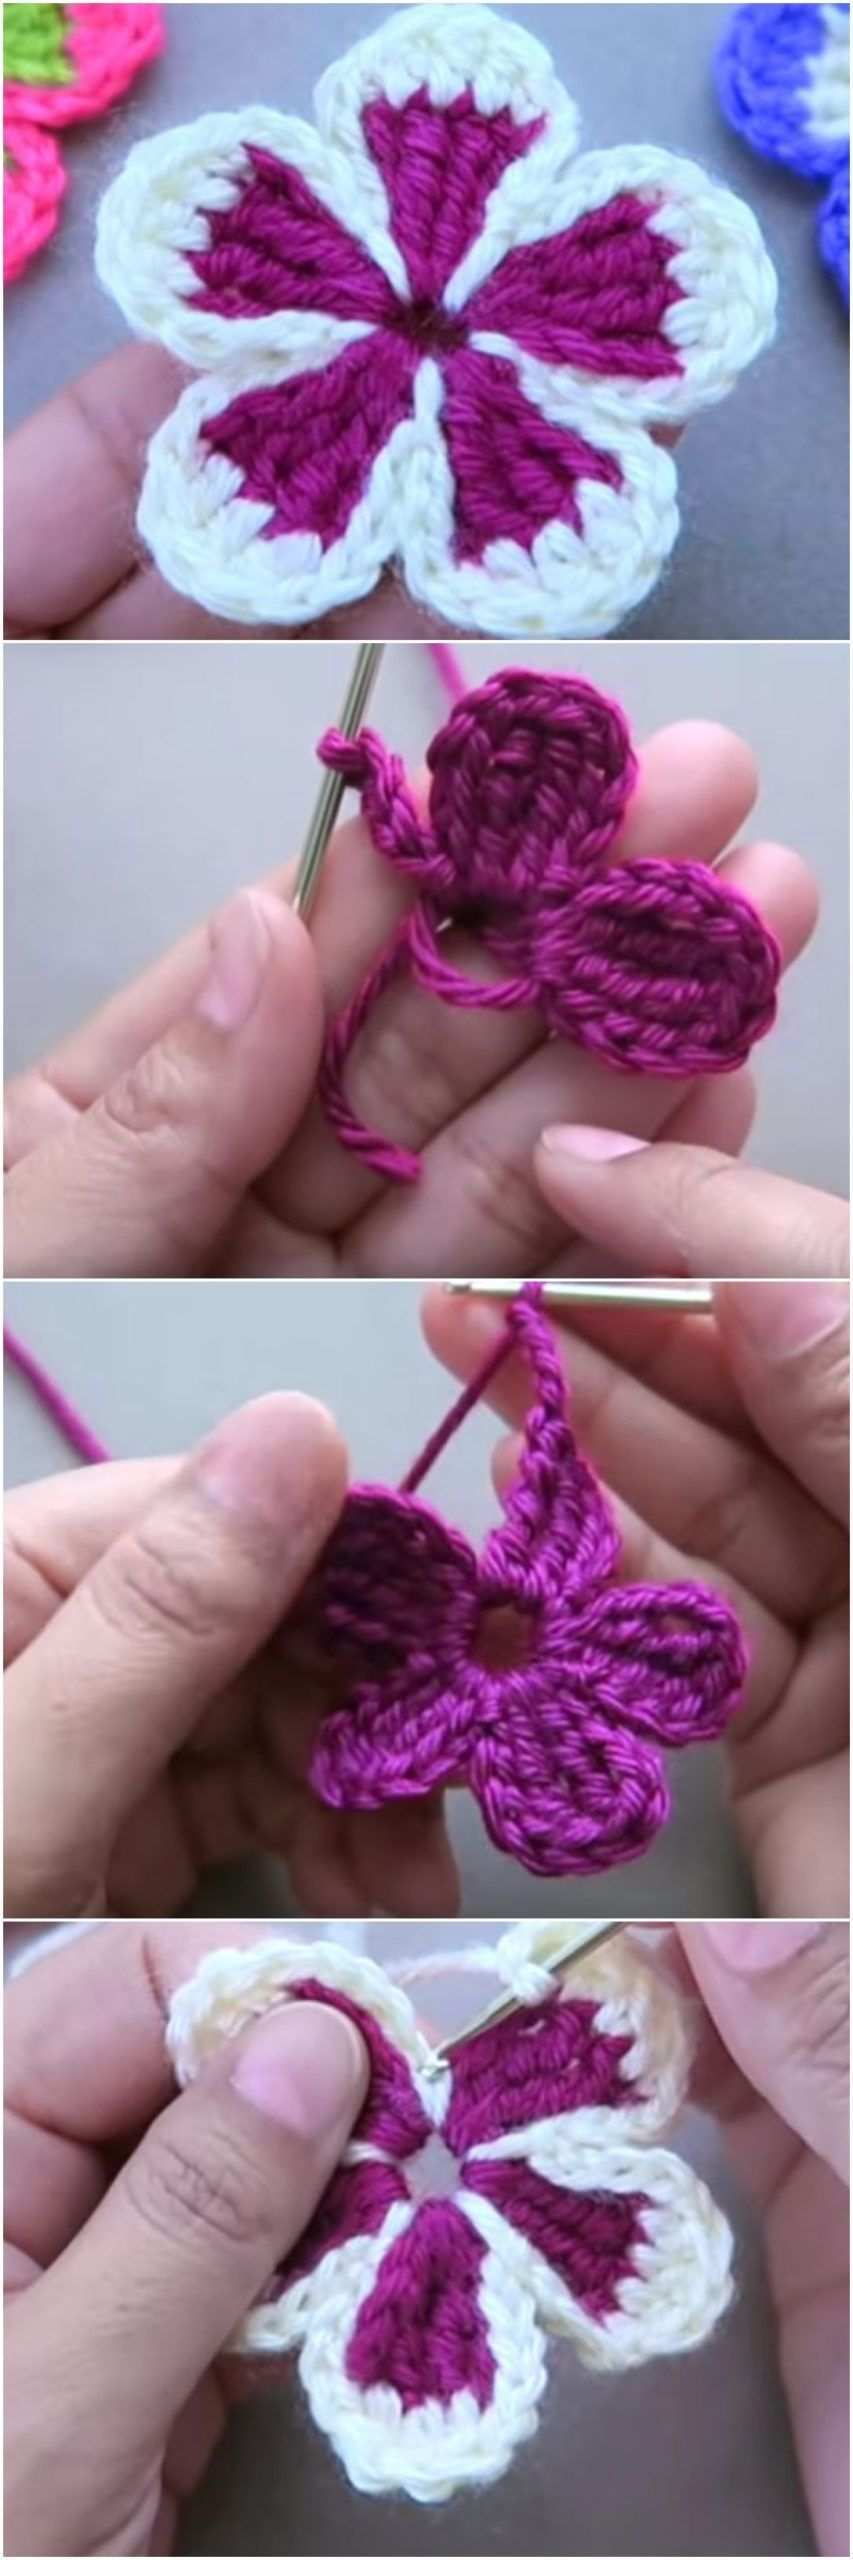 Crochet Tiny Flower Video Tutorial We Love Crochet Stricken Ist So Einfach W Crochet Tiny In 2020 Blumen Hakeln Anleitung Muster Blume Handgefertigte Blumen